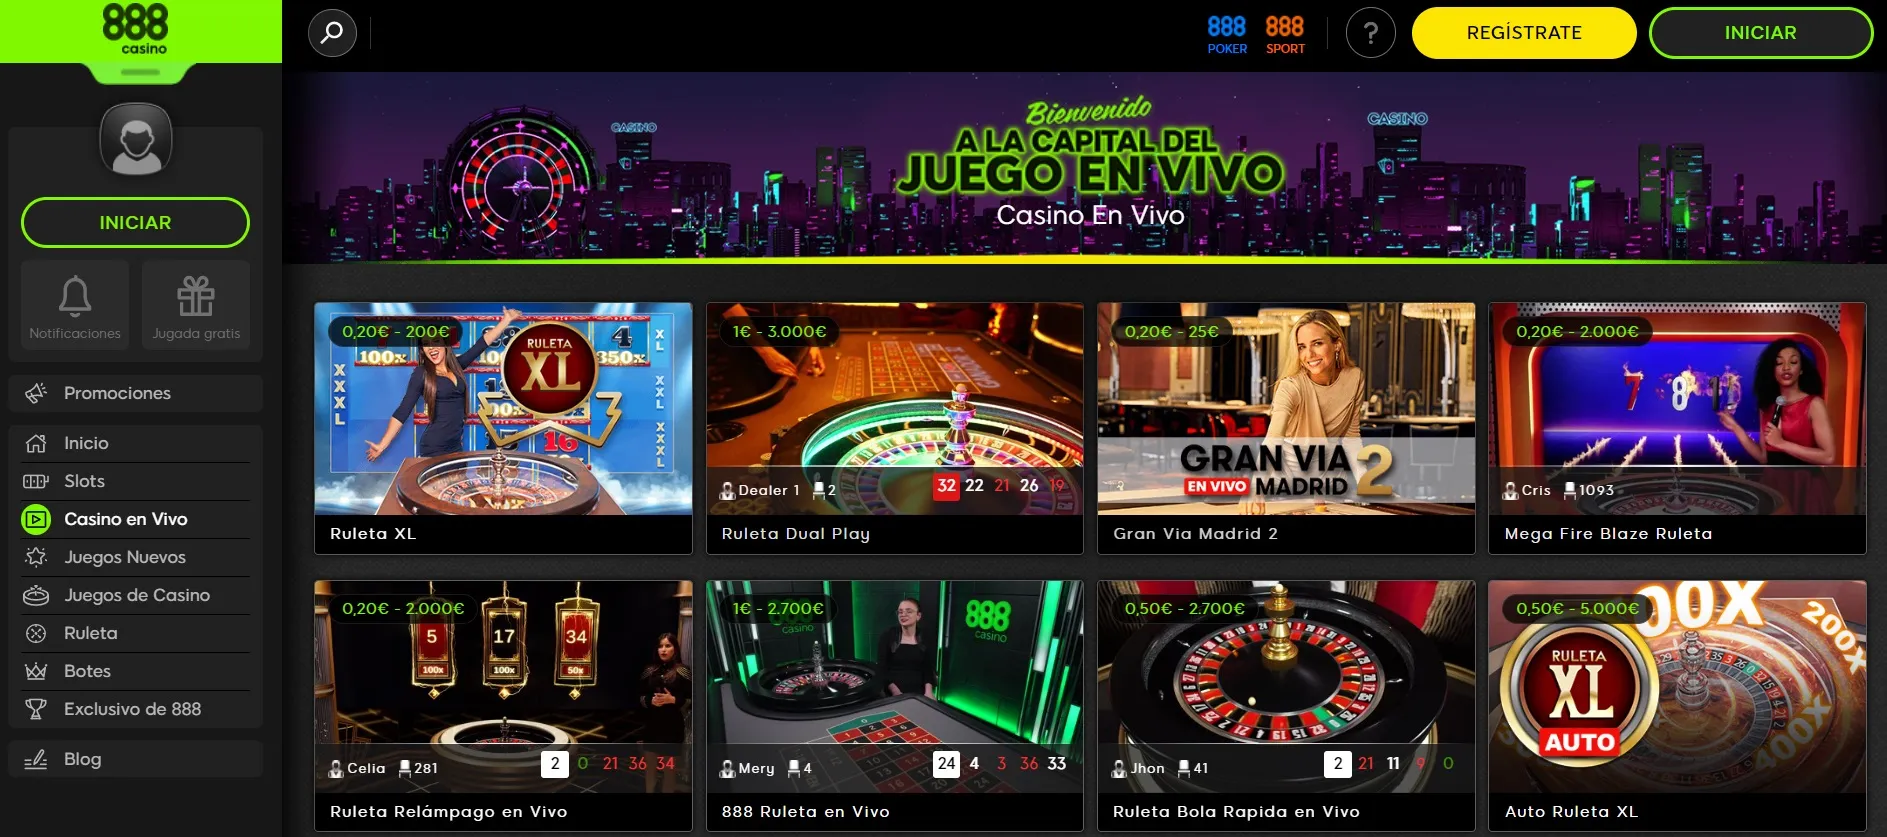 destacados casinos online